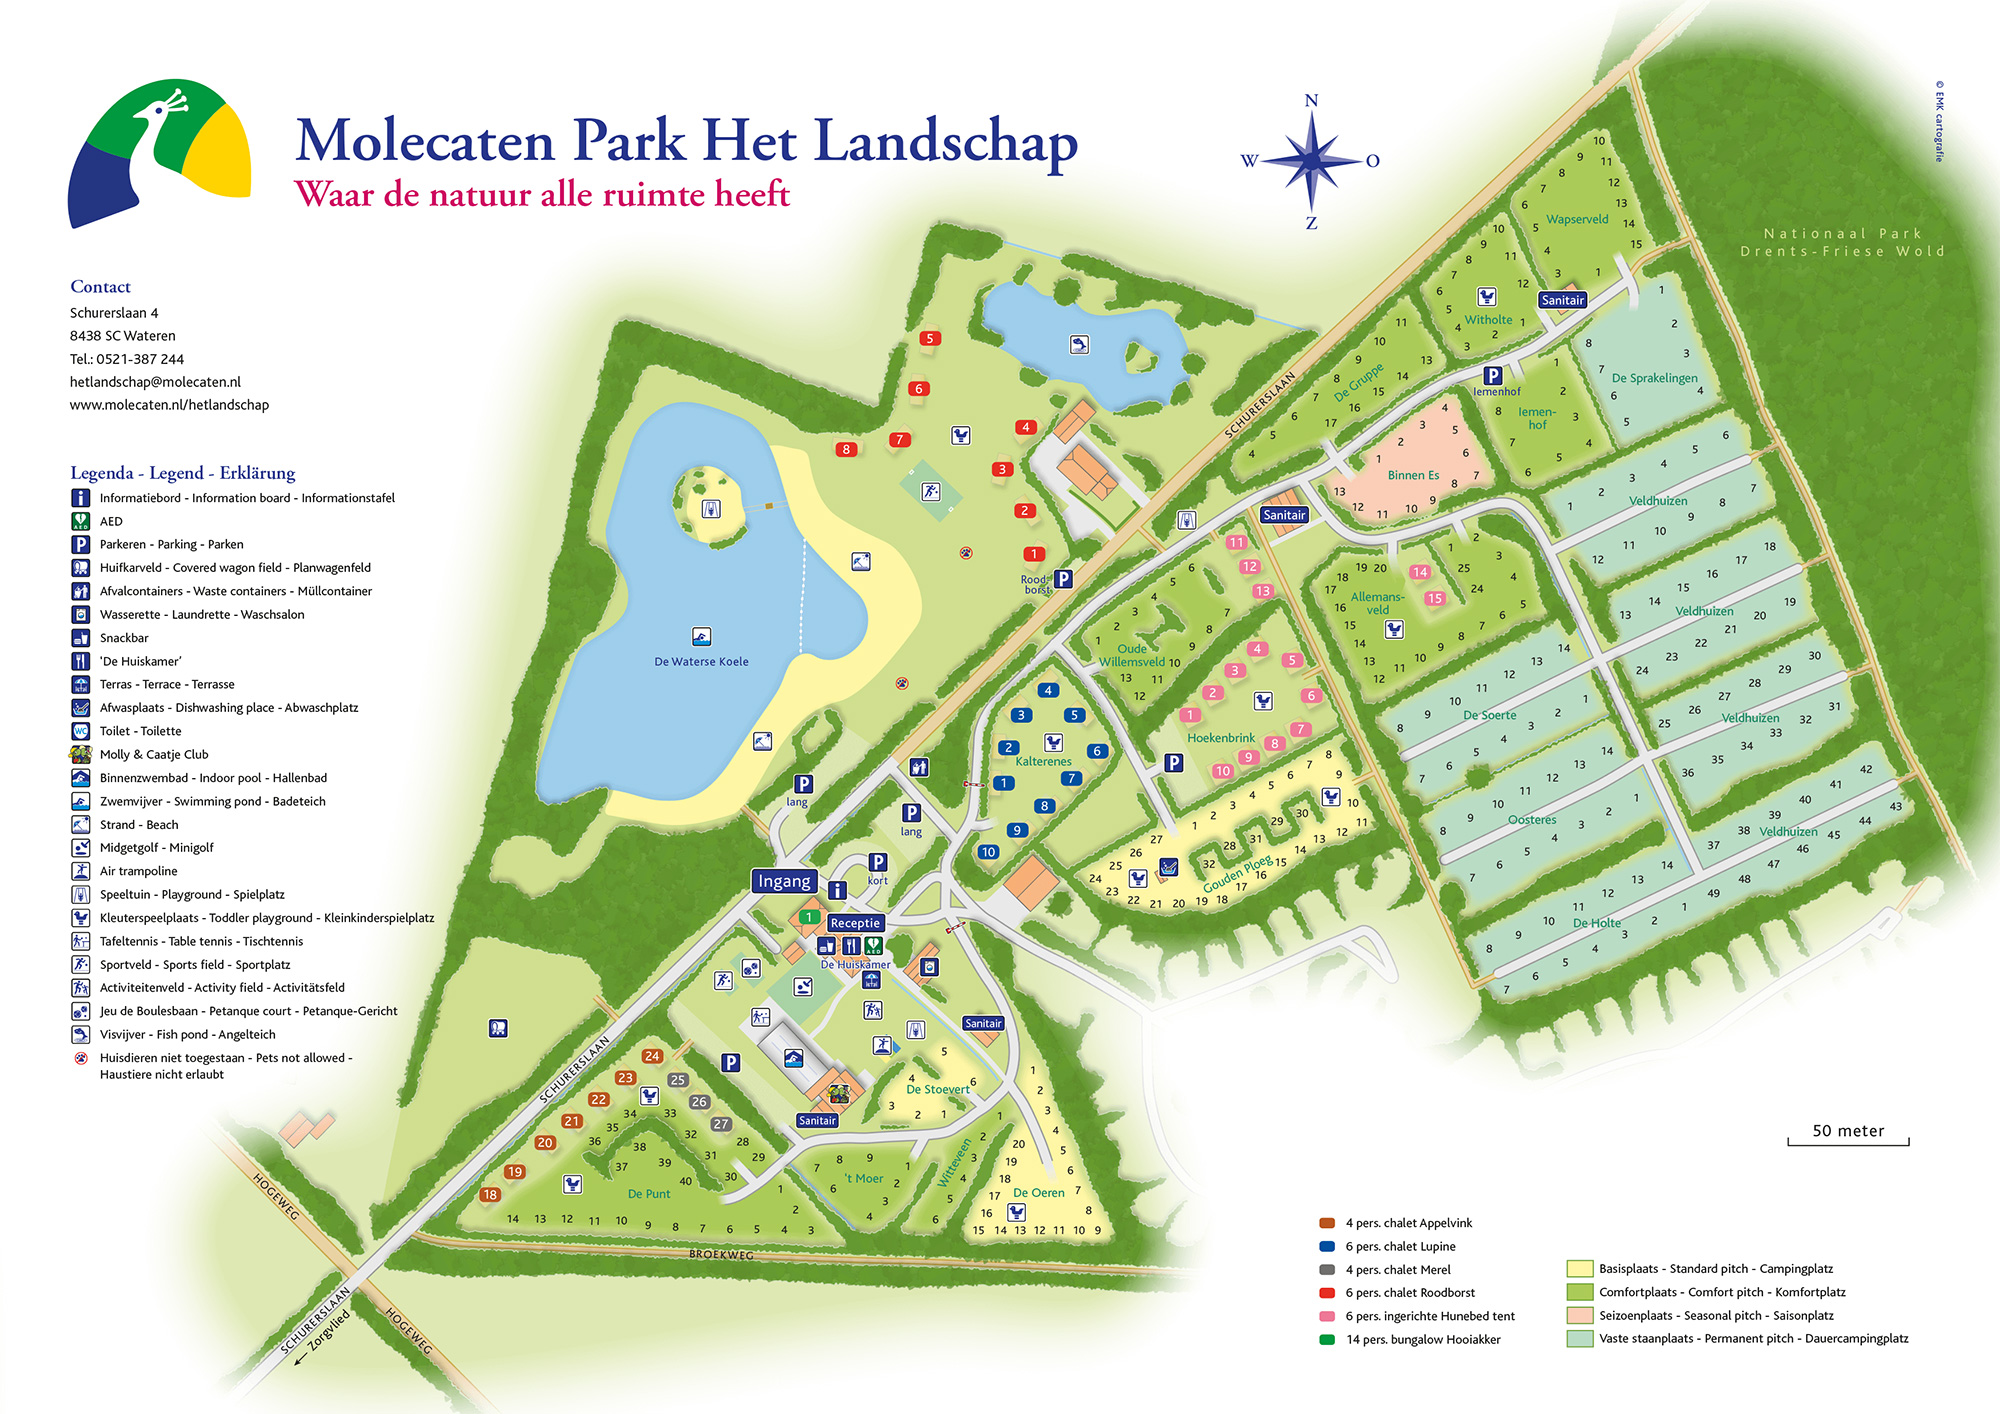 Campsite map Molecaten Park Het Landschap